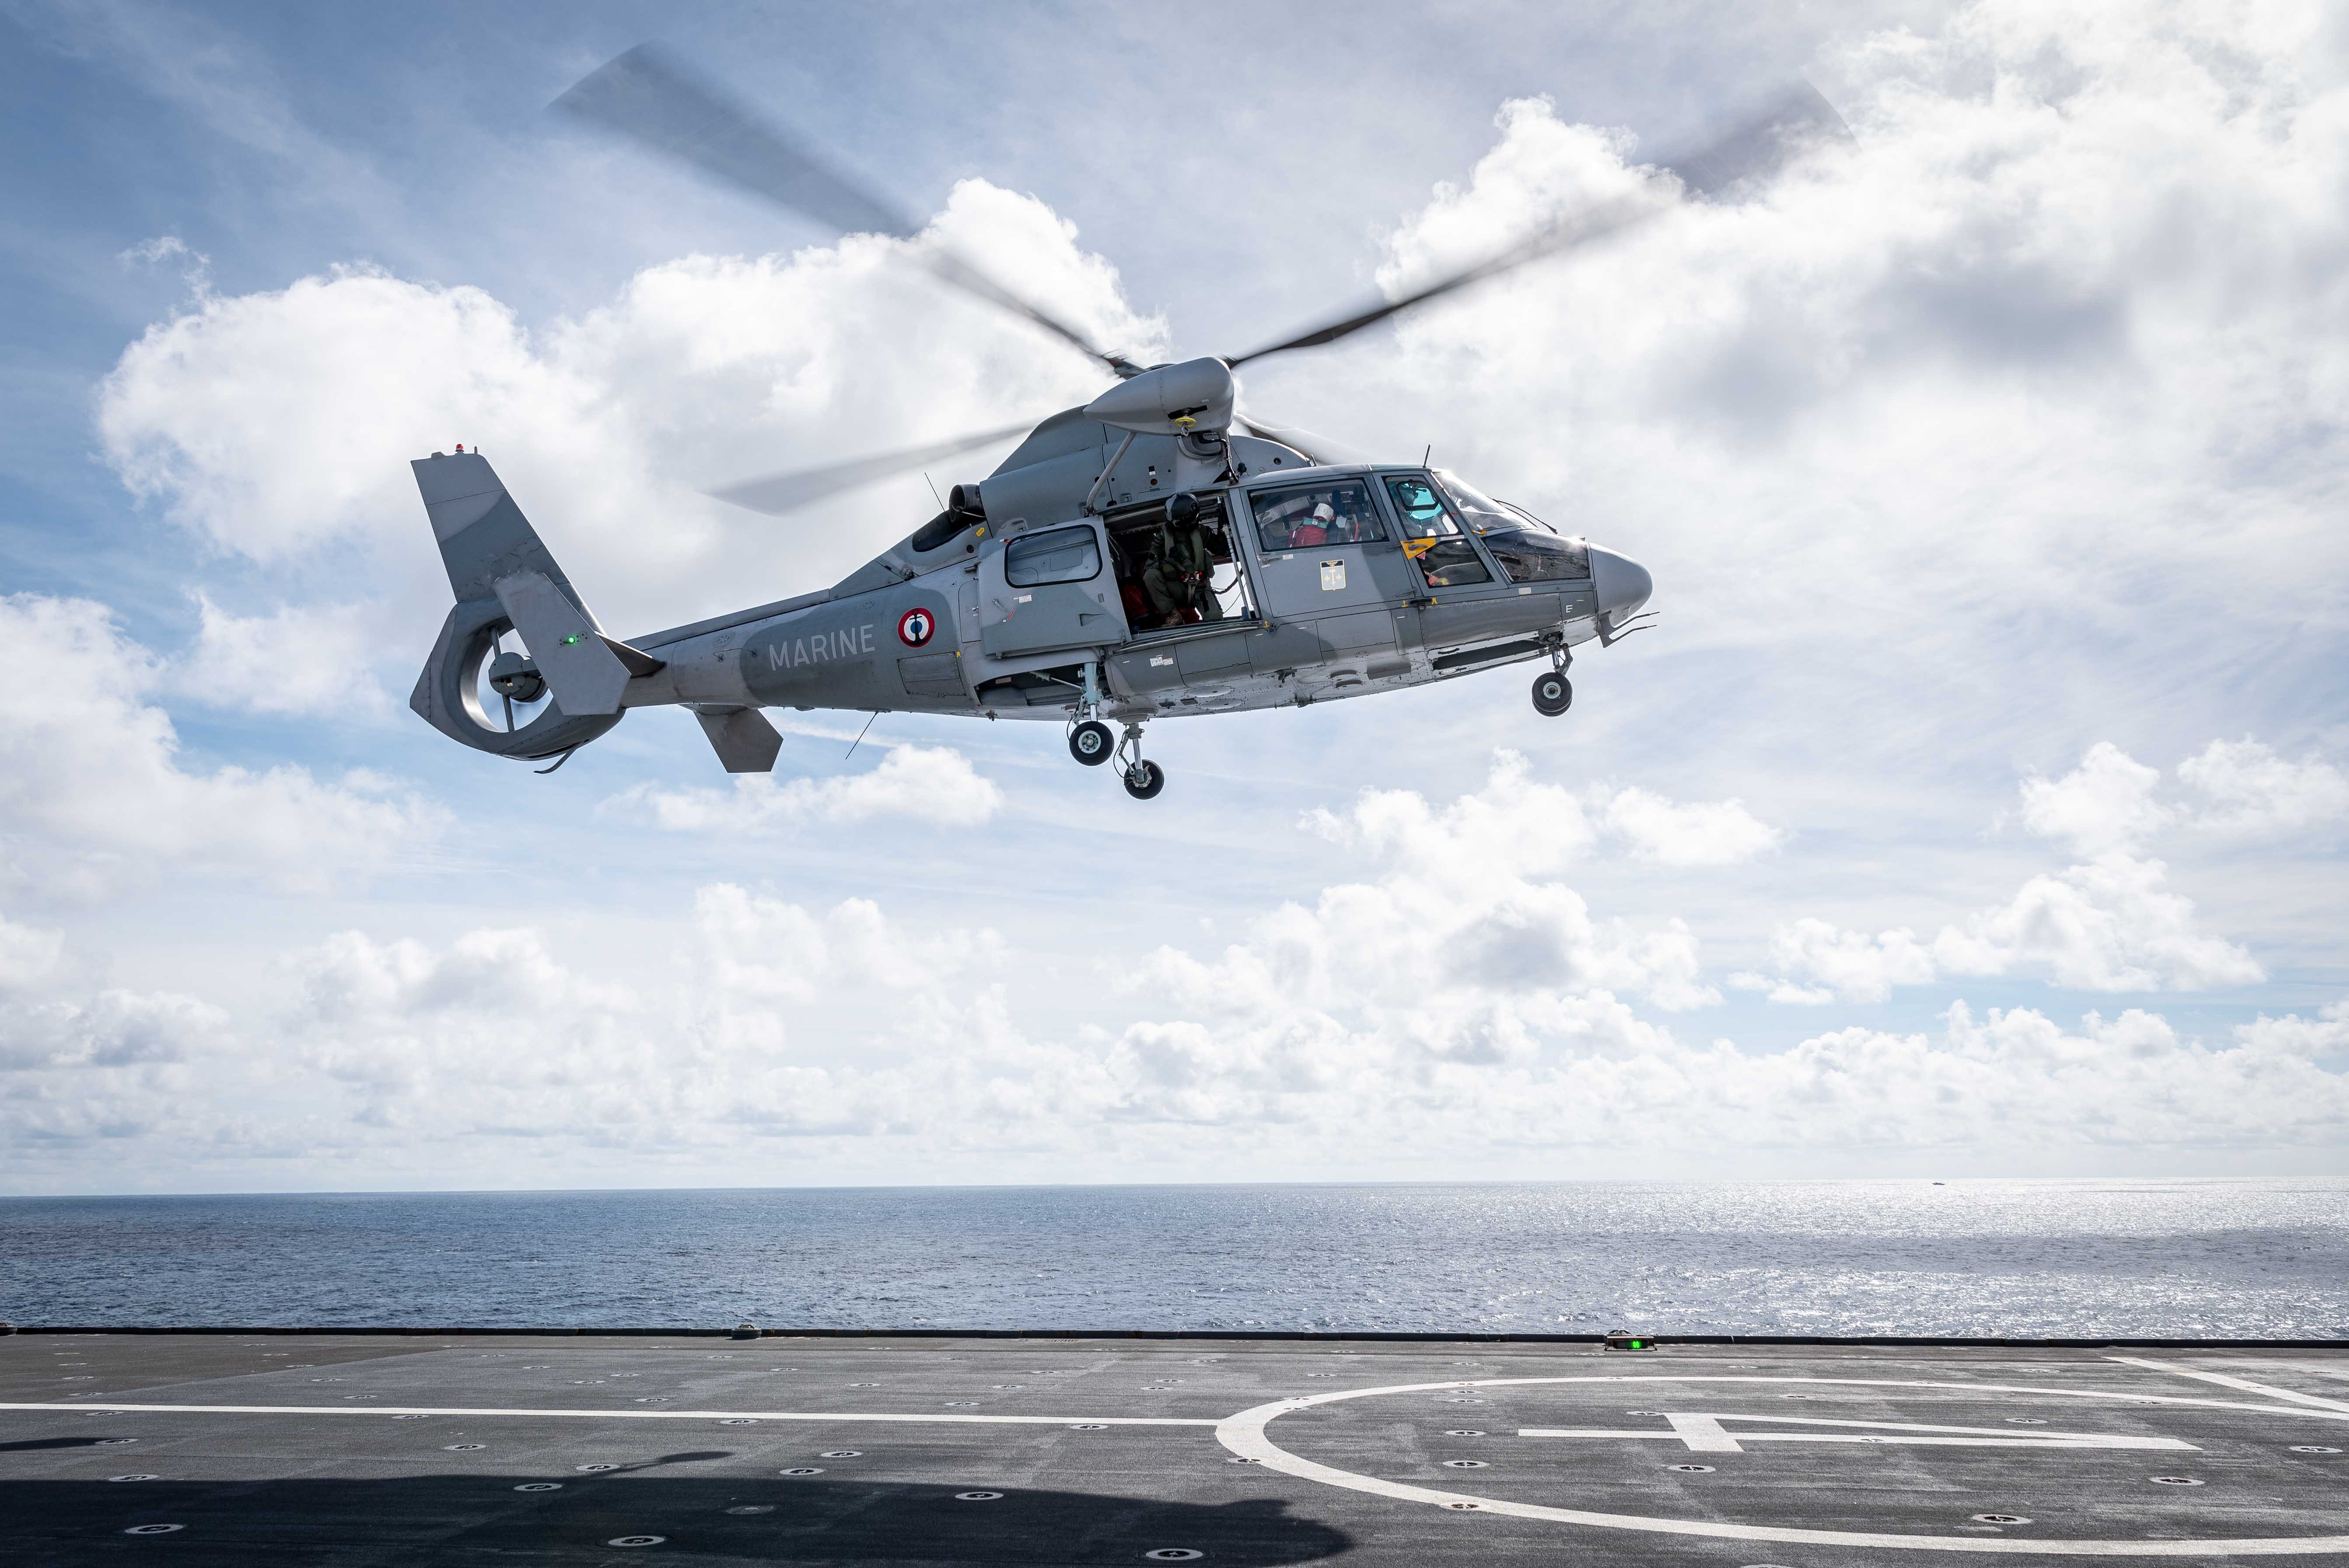 Mission JDA24 : Les hélicoptères en manœuvre au large de la Guyane